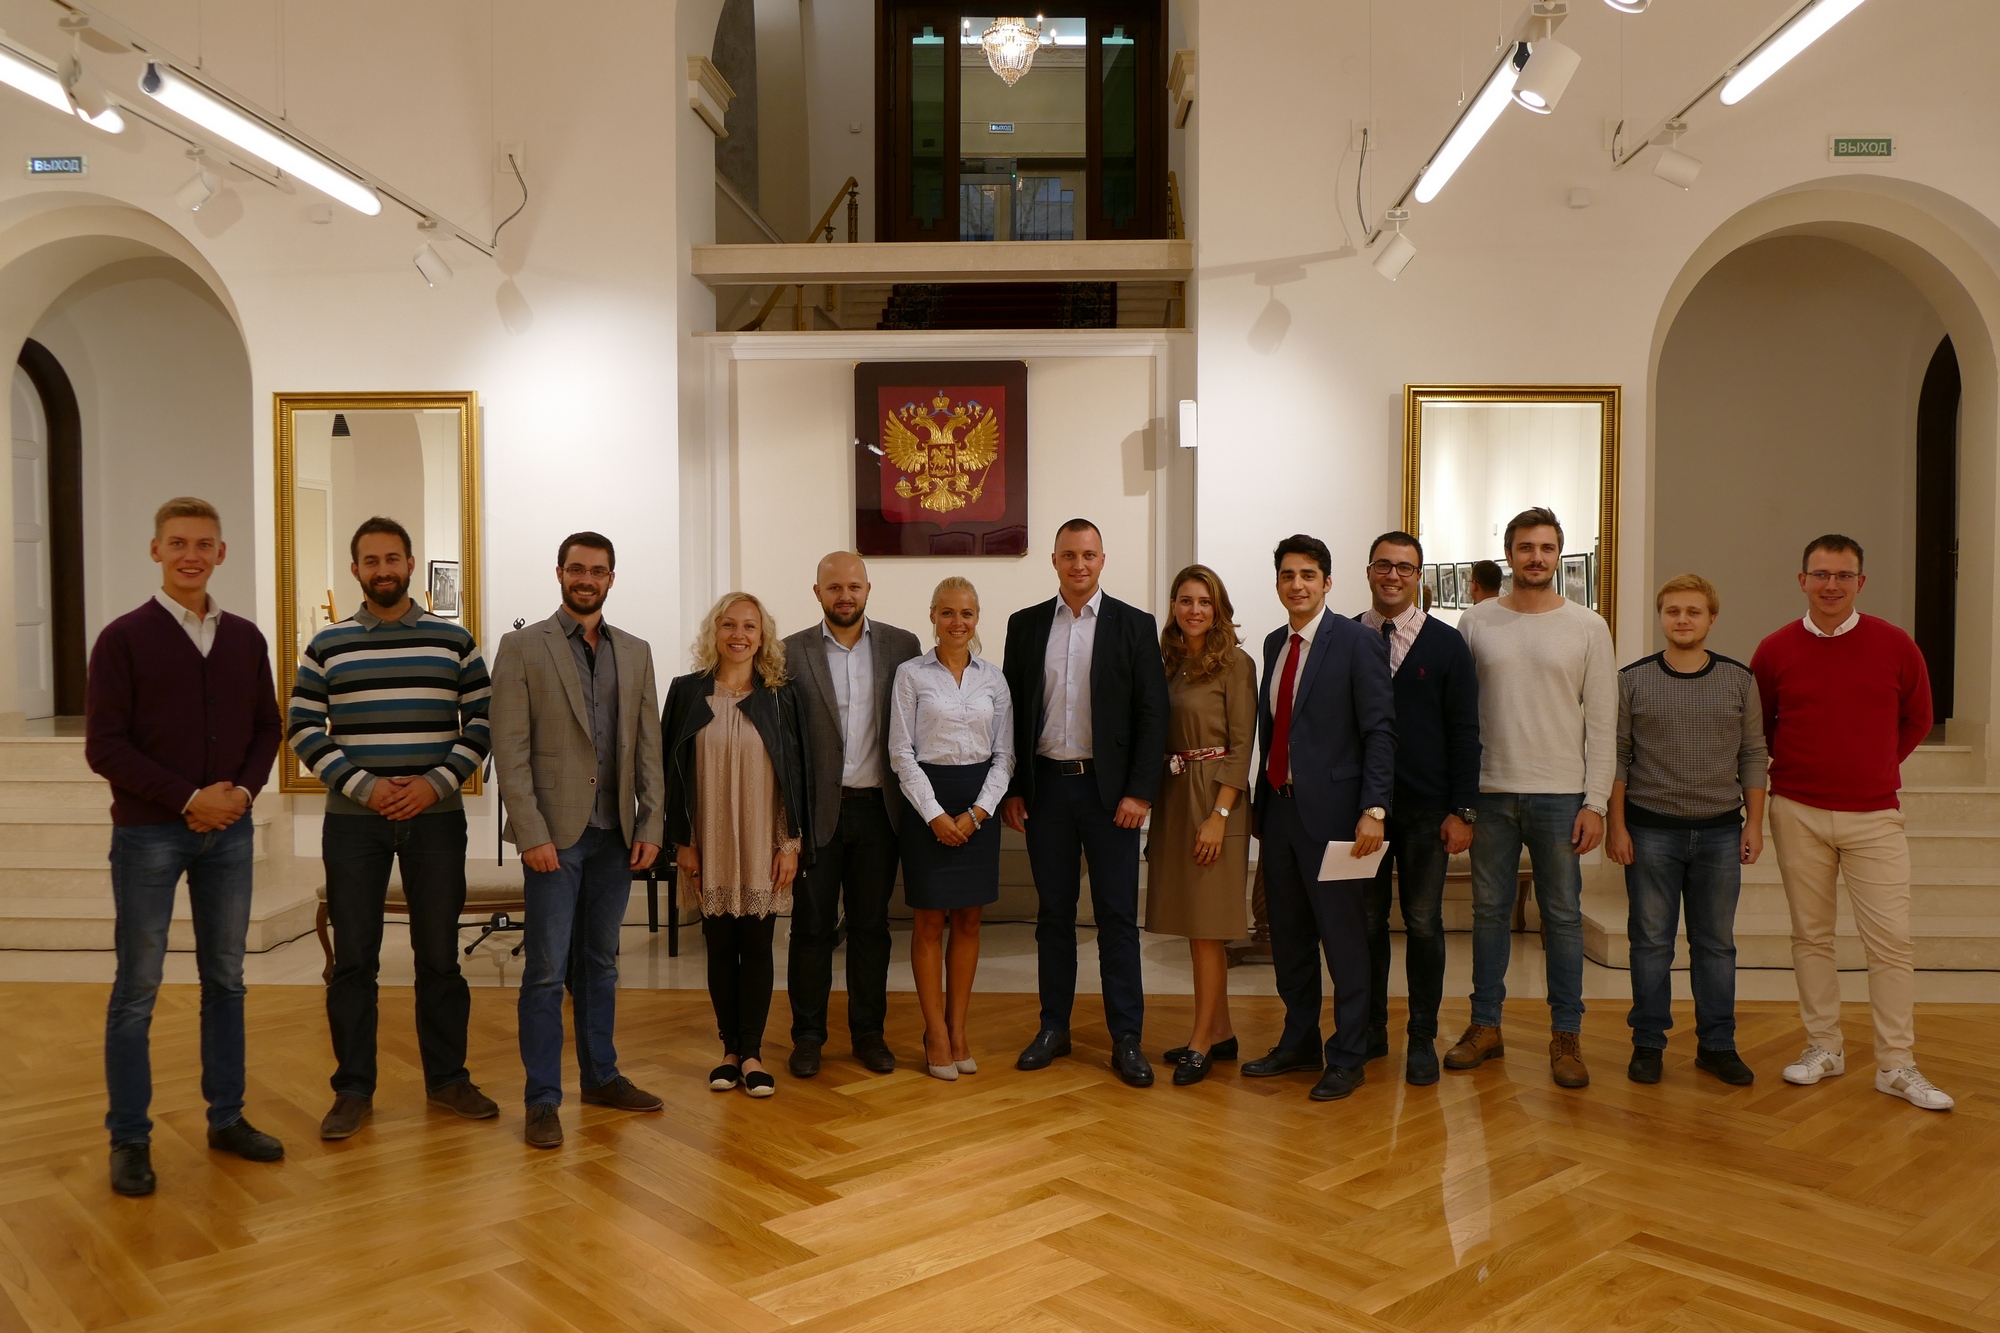 У Руском дому је одржан сусрет омладинског актива Србије.